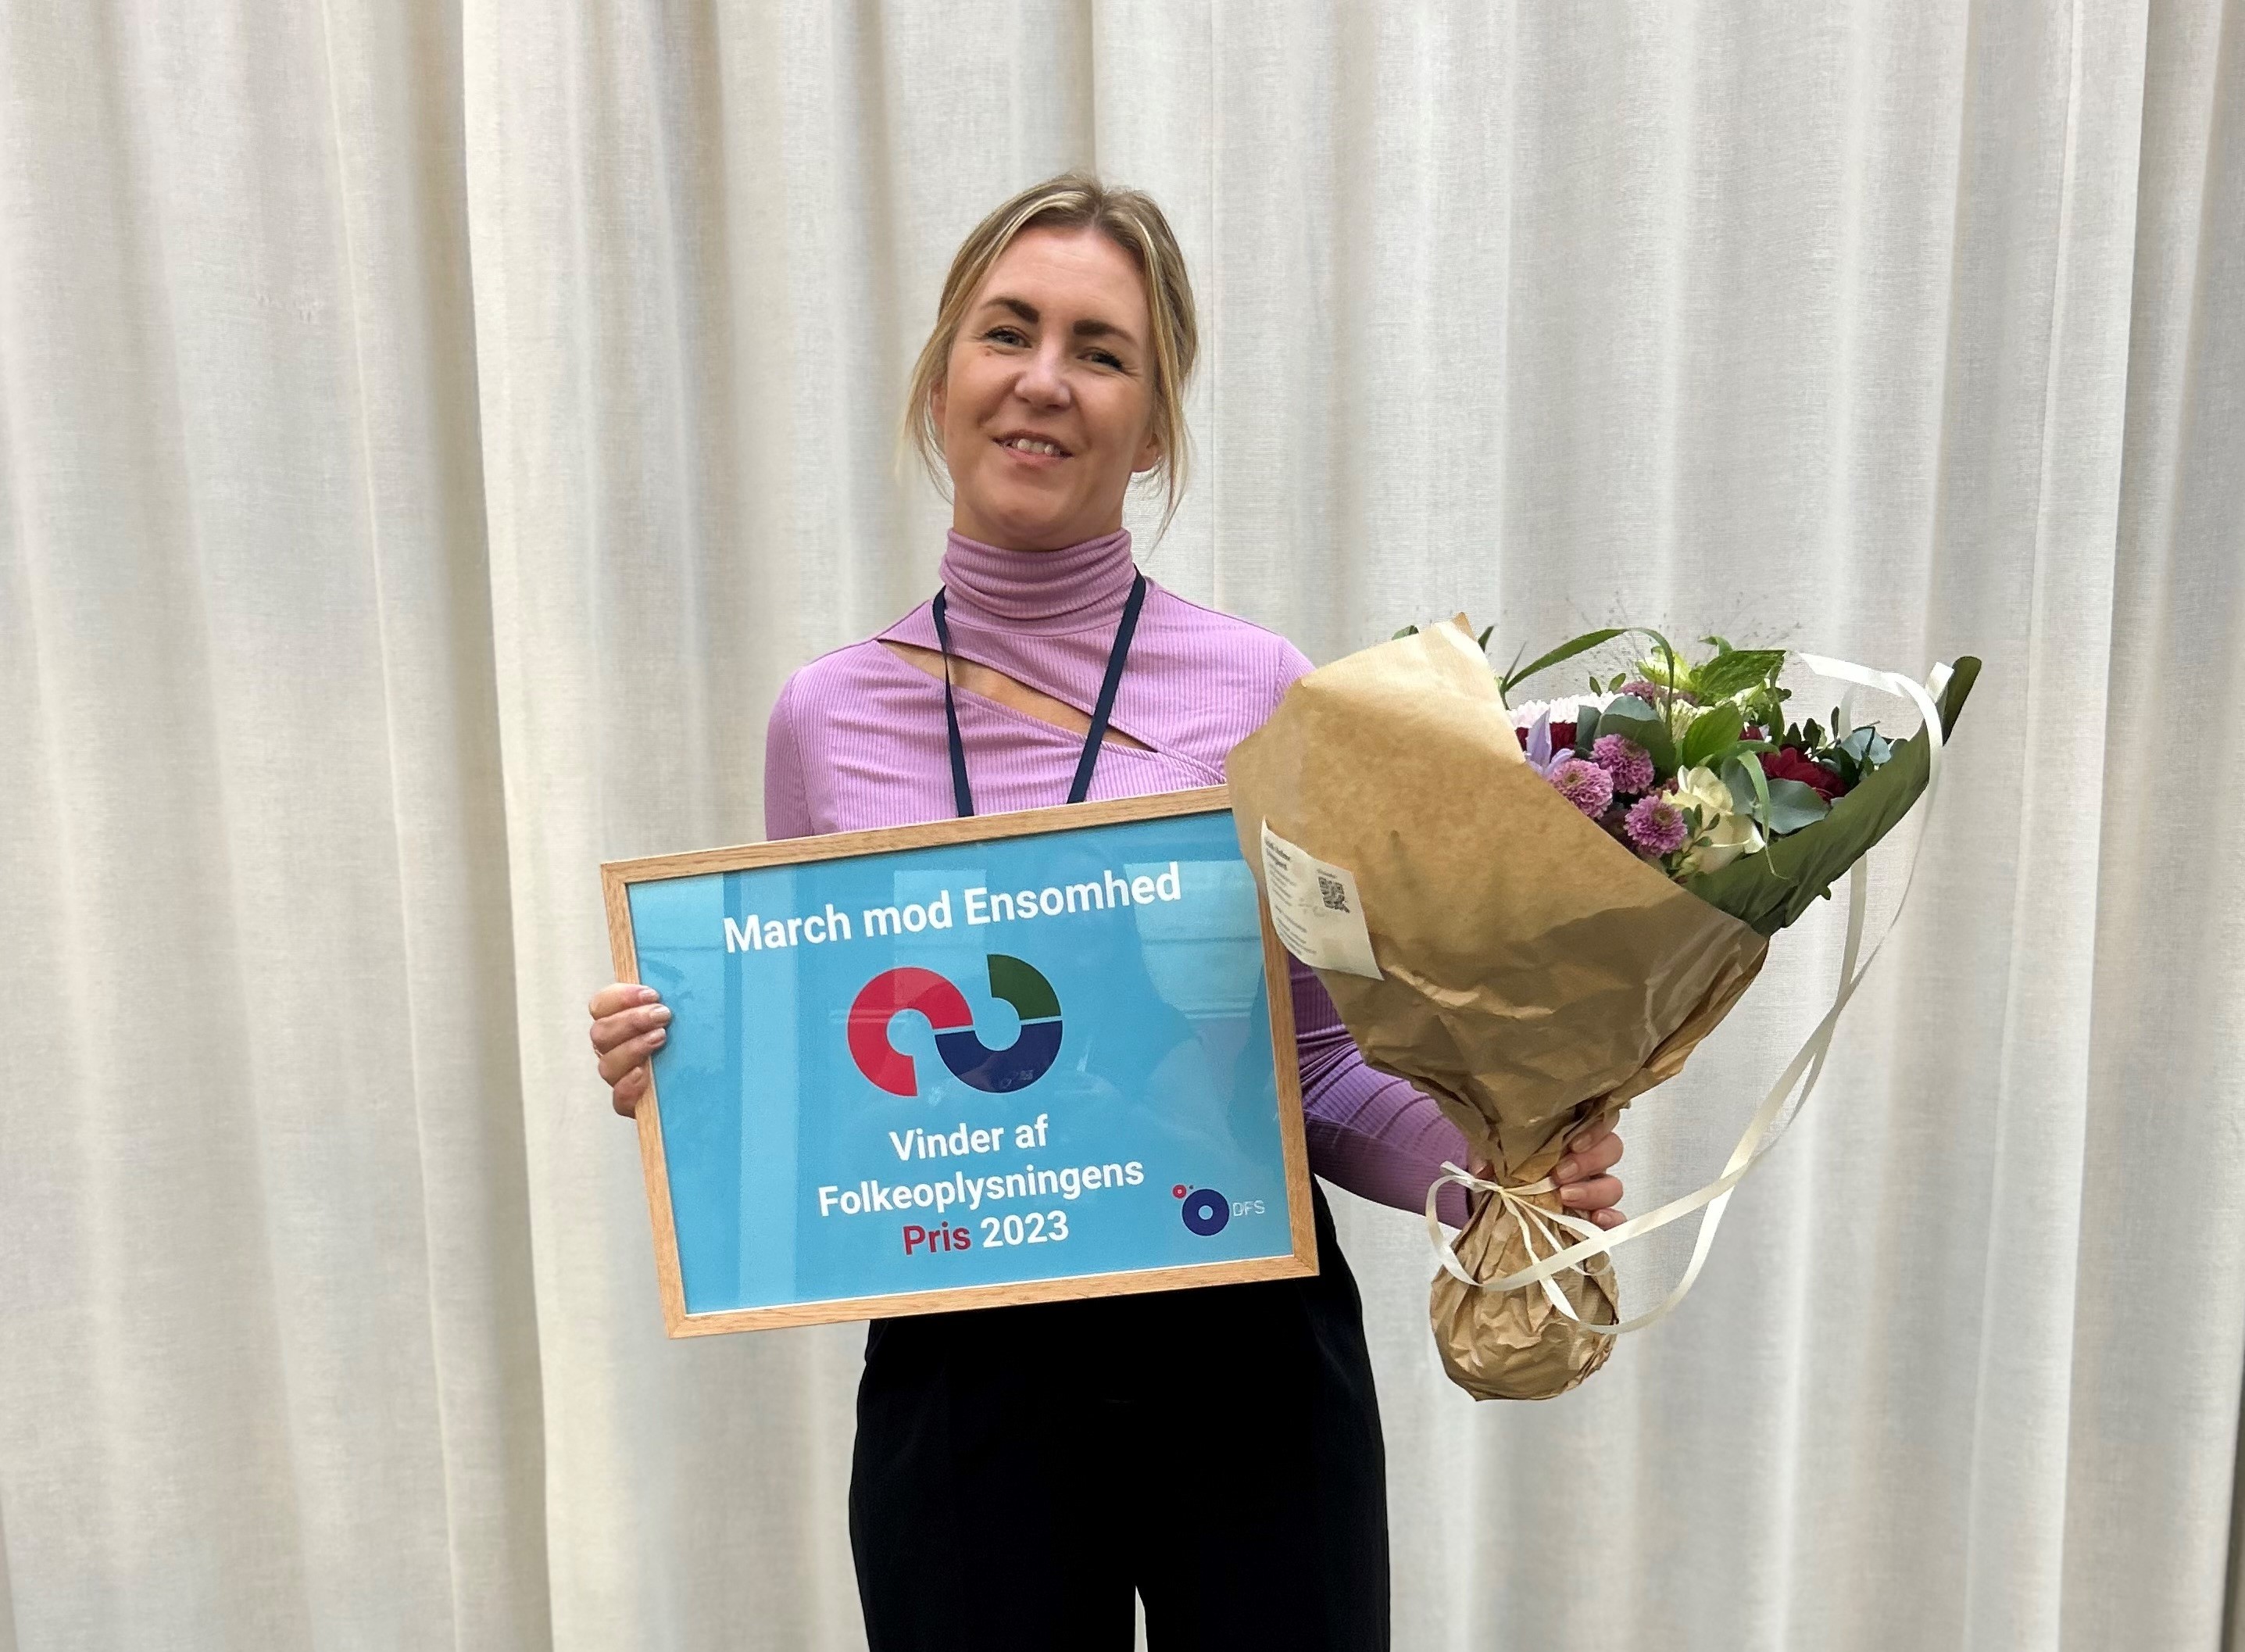 Forperson for Ensomhed Danmark, Birgitte Schwabe, modtog prisen på vegne af Patrick Cakirli, til Folkeoplysningens Dag den 12. oktober.